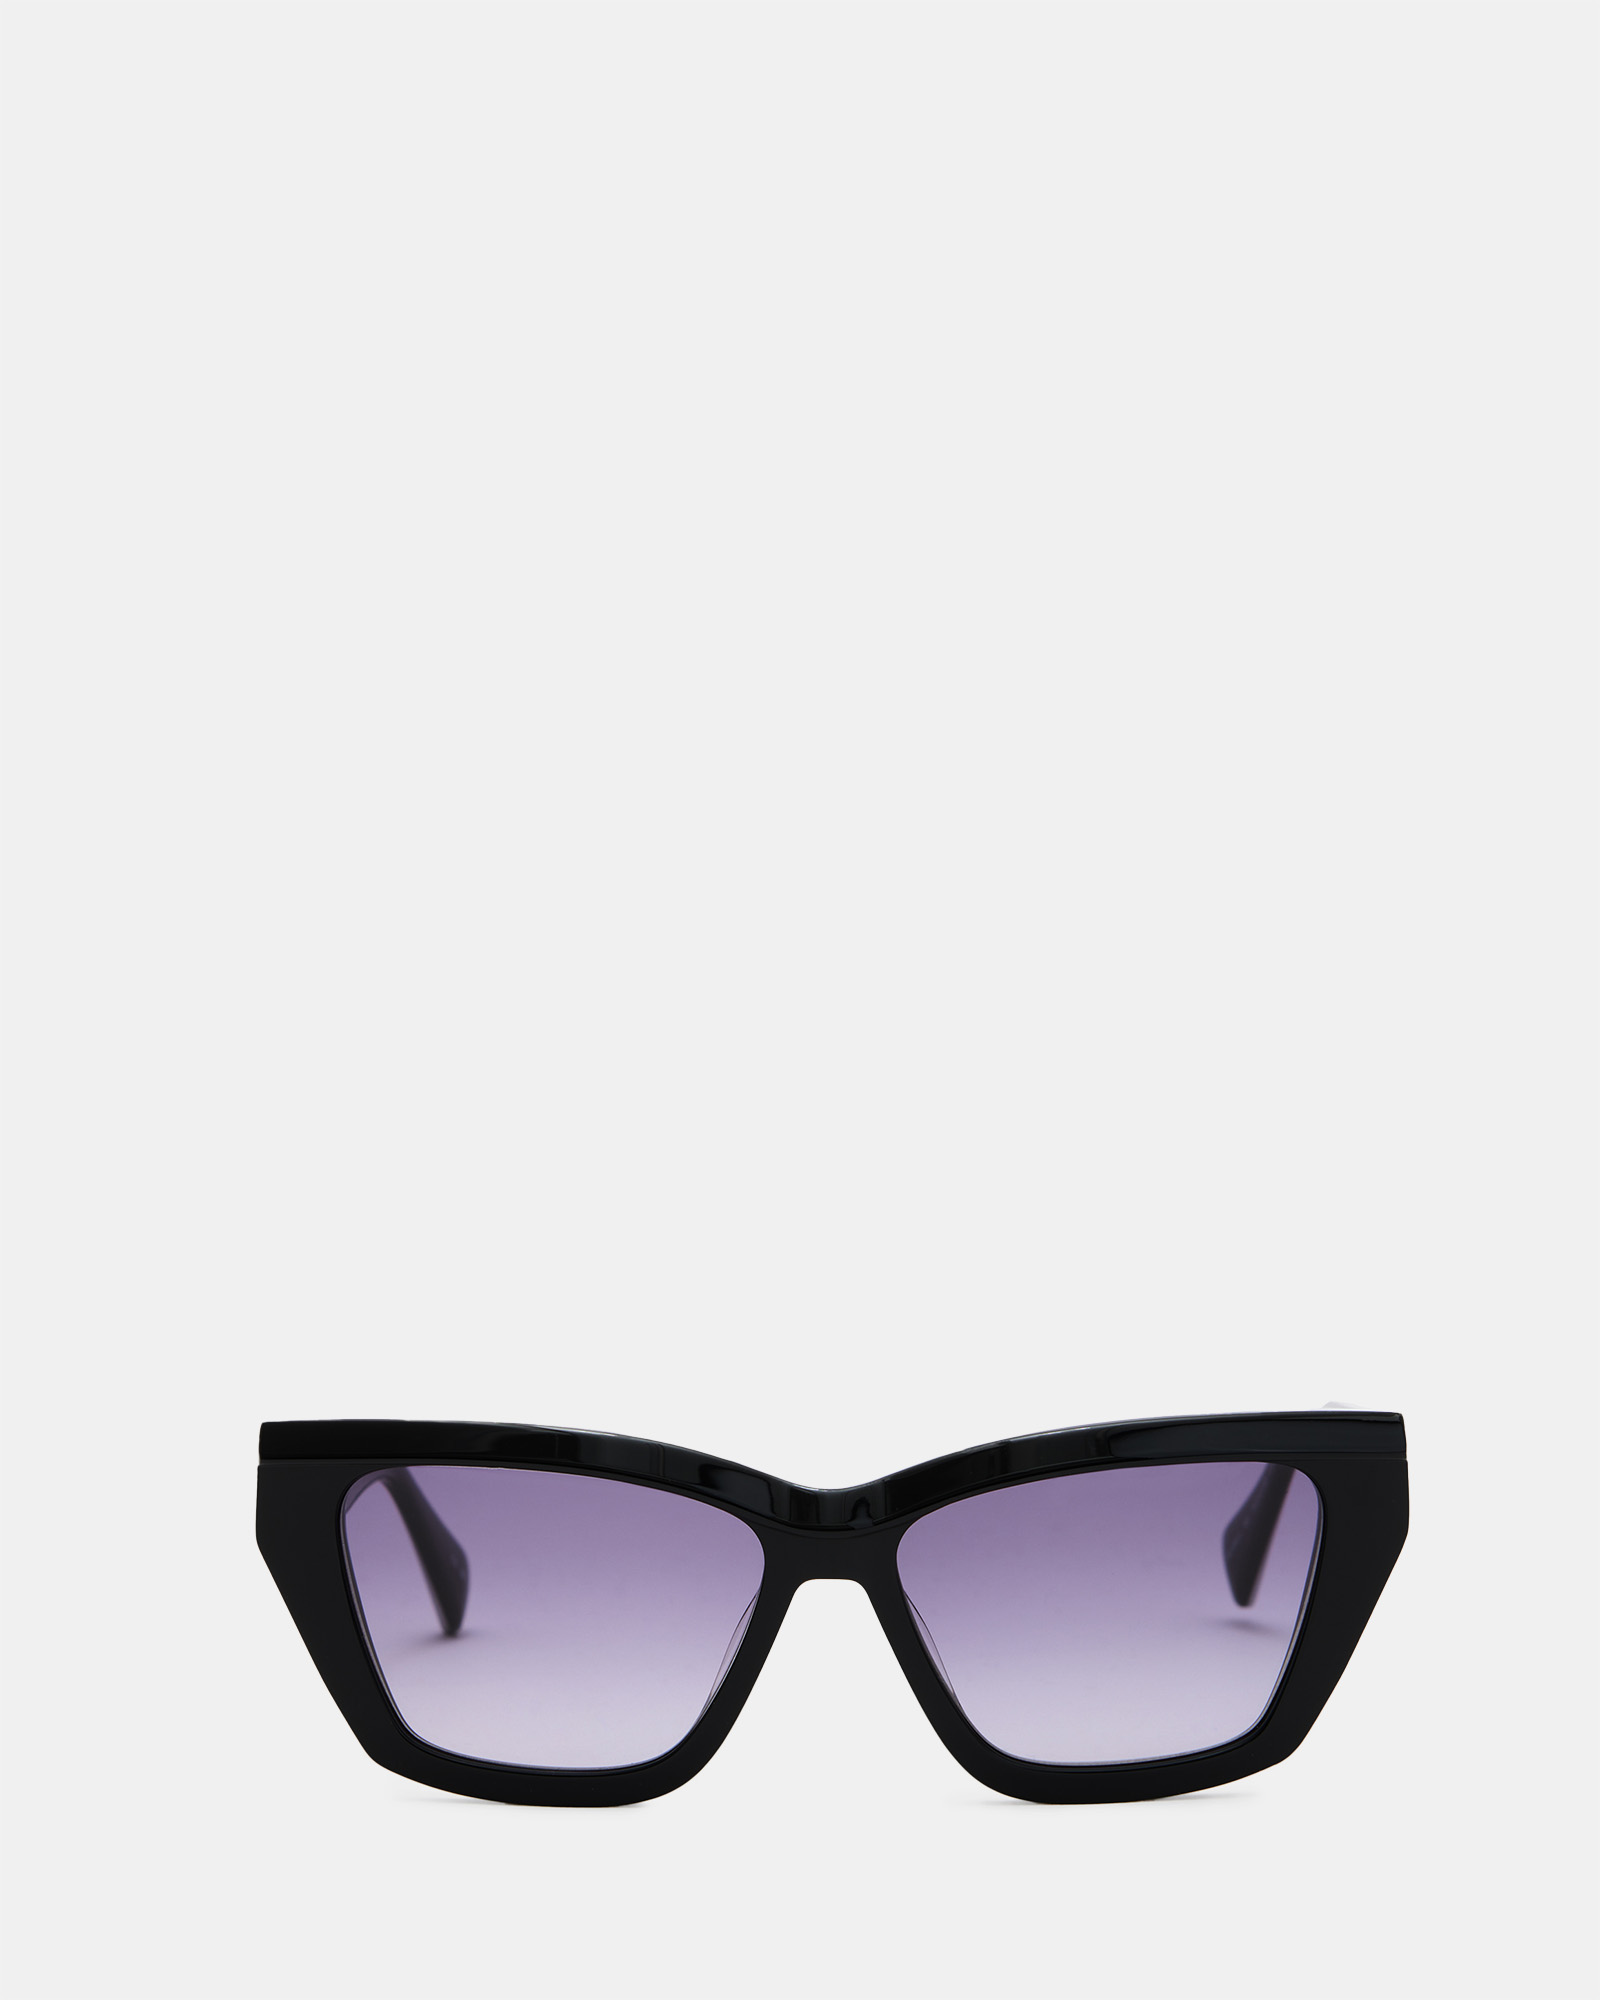 AllSaints Kitty Rectangular Cat Eye Sunglasses,, GLOSS BLACK